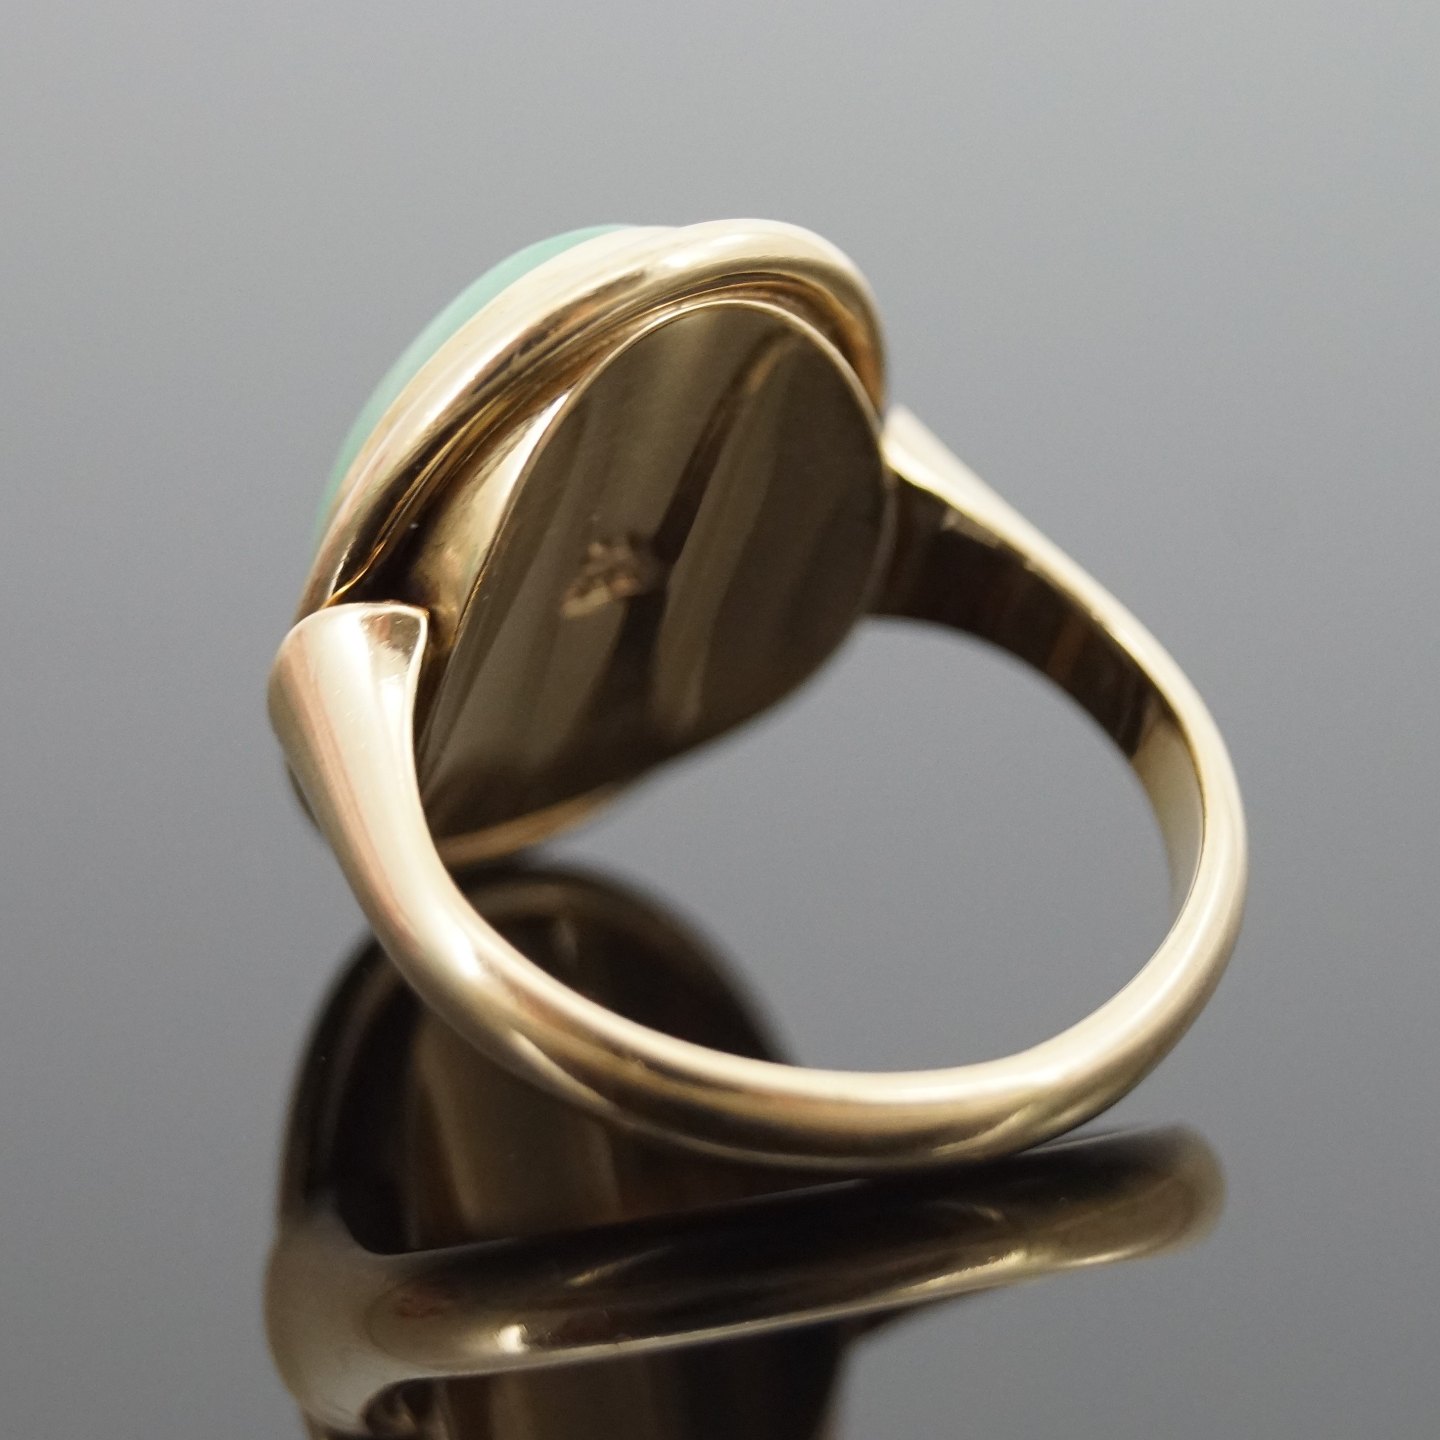 www.Antikvitet.net - C. Antonsen; Ring af 14 kt. guld med jade